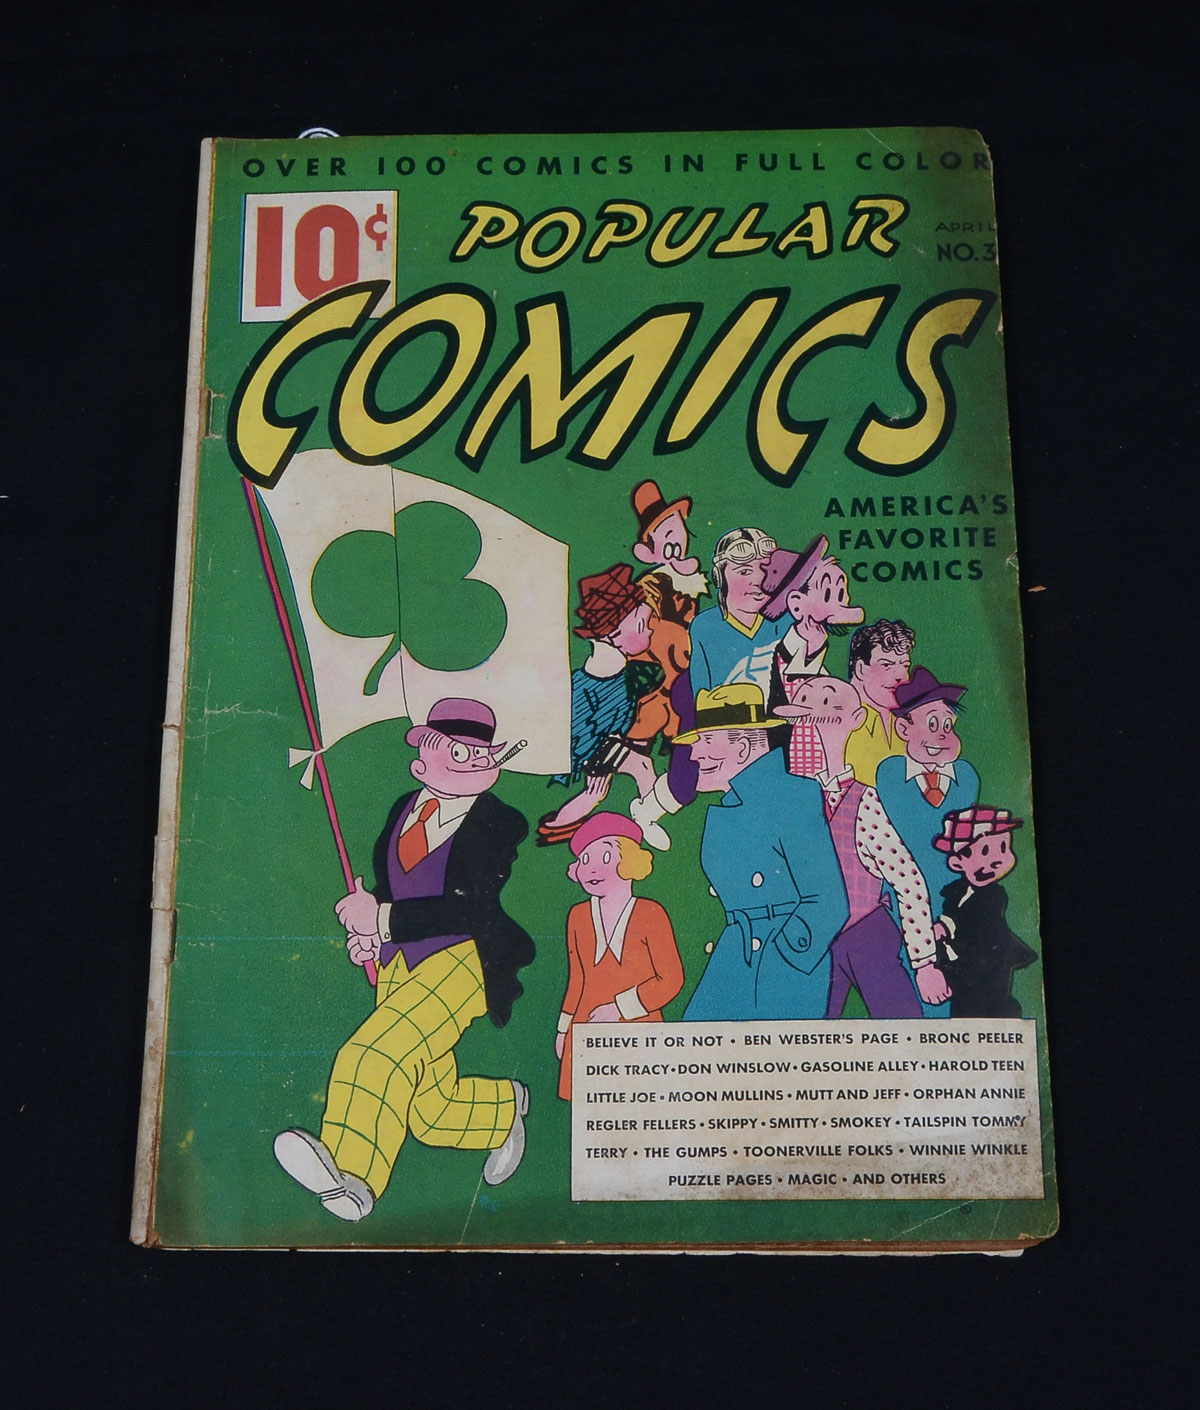 POPULAR COMICS NO.3, APRIL 1936: